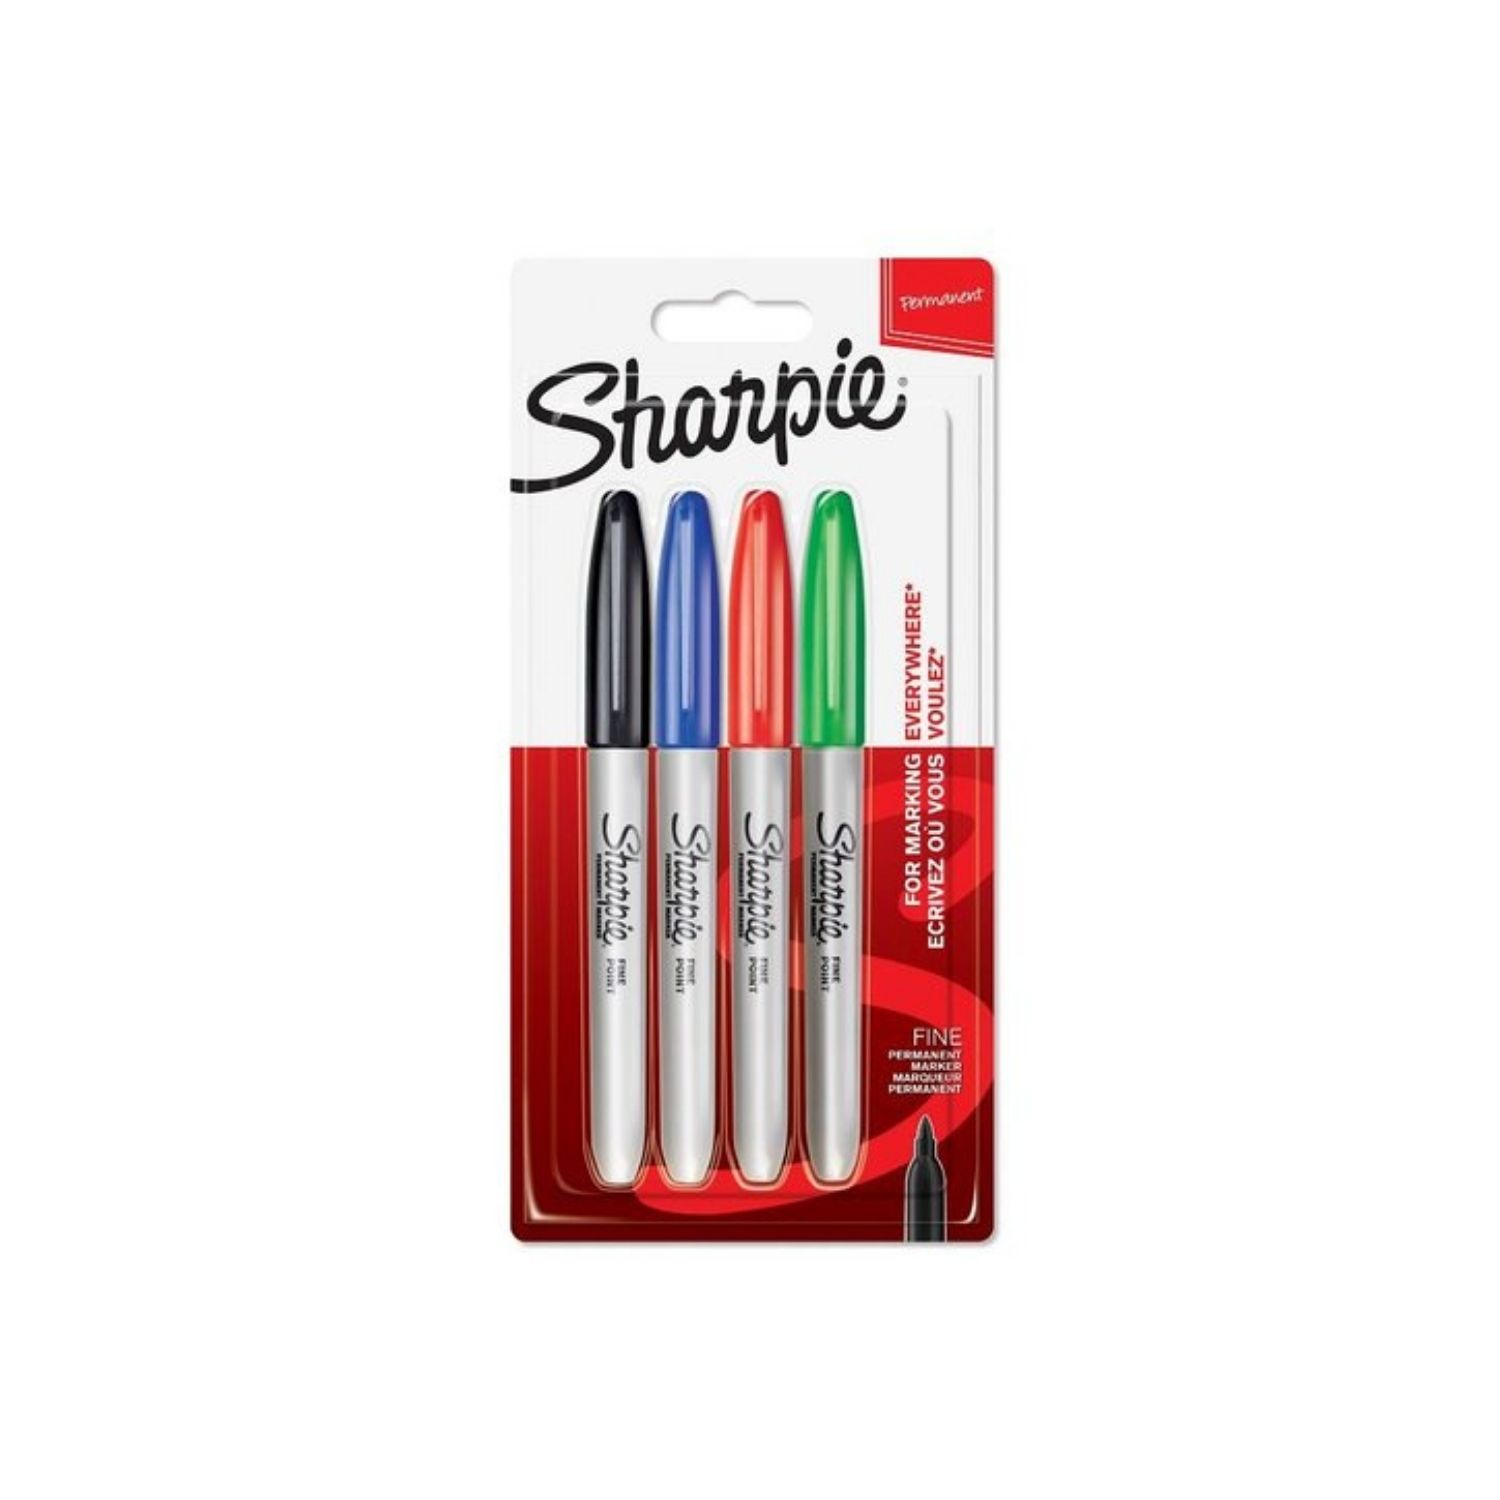 Sharpie Fine Permanent Canlı Renkler 4'lü Markör